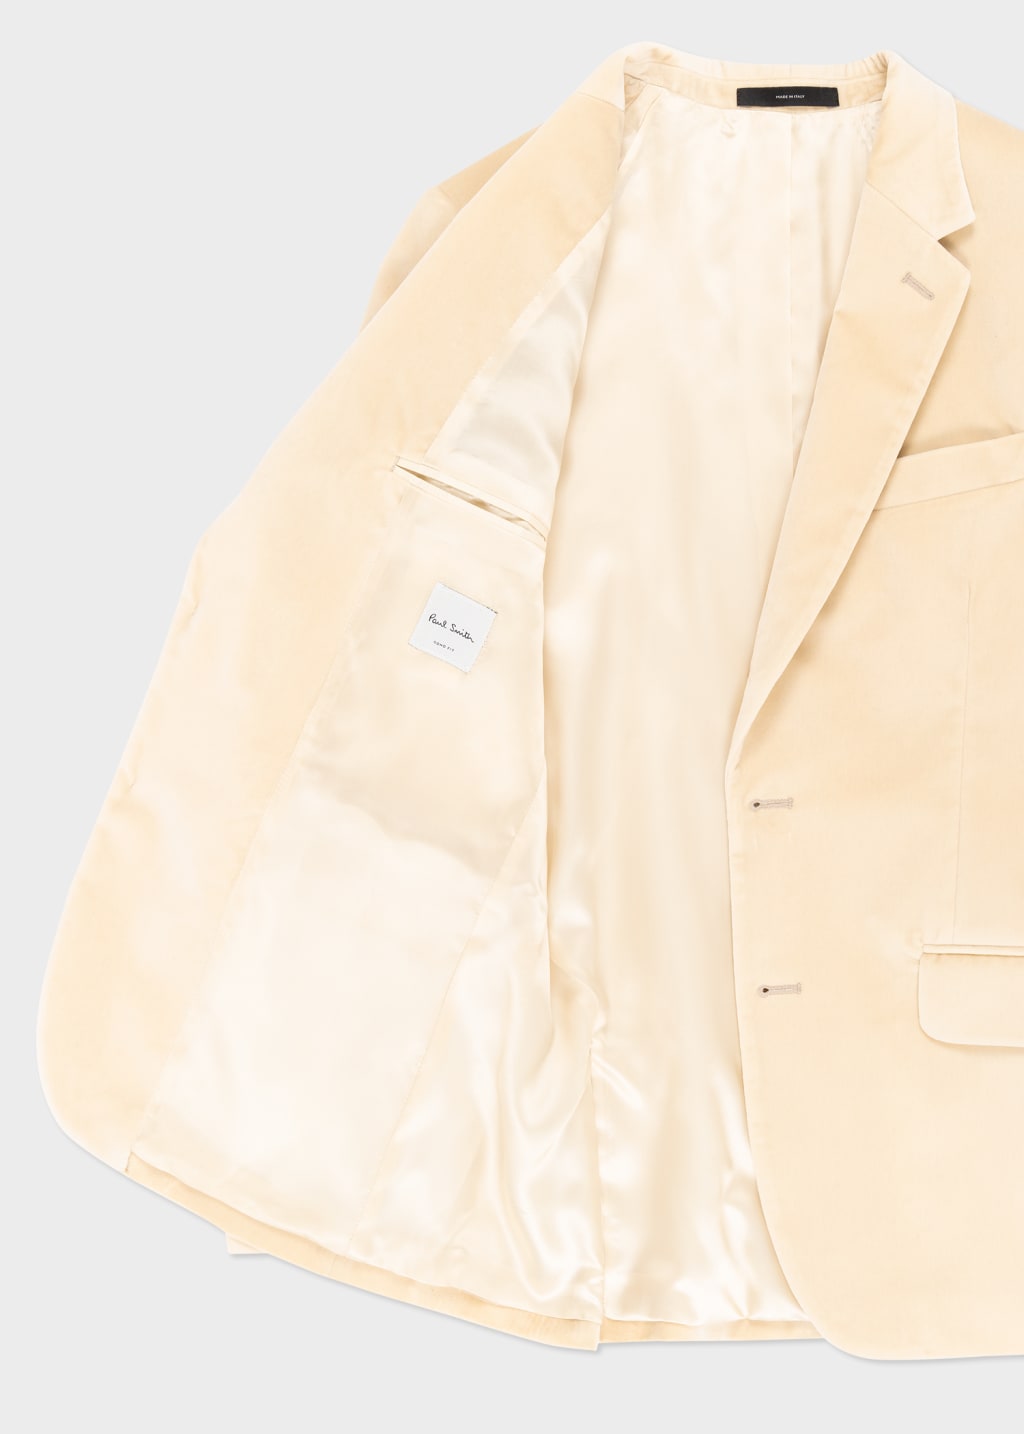 Detail View - The Soho - Tailored-Fit Ivory Velvet Blazer Paul Smith